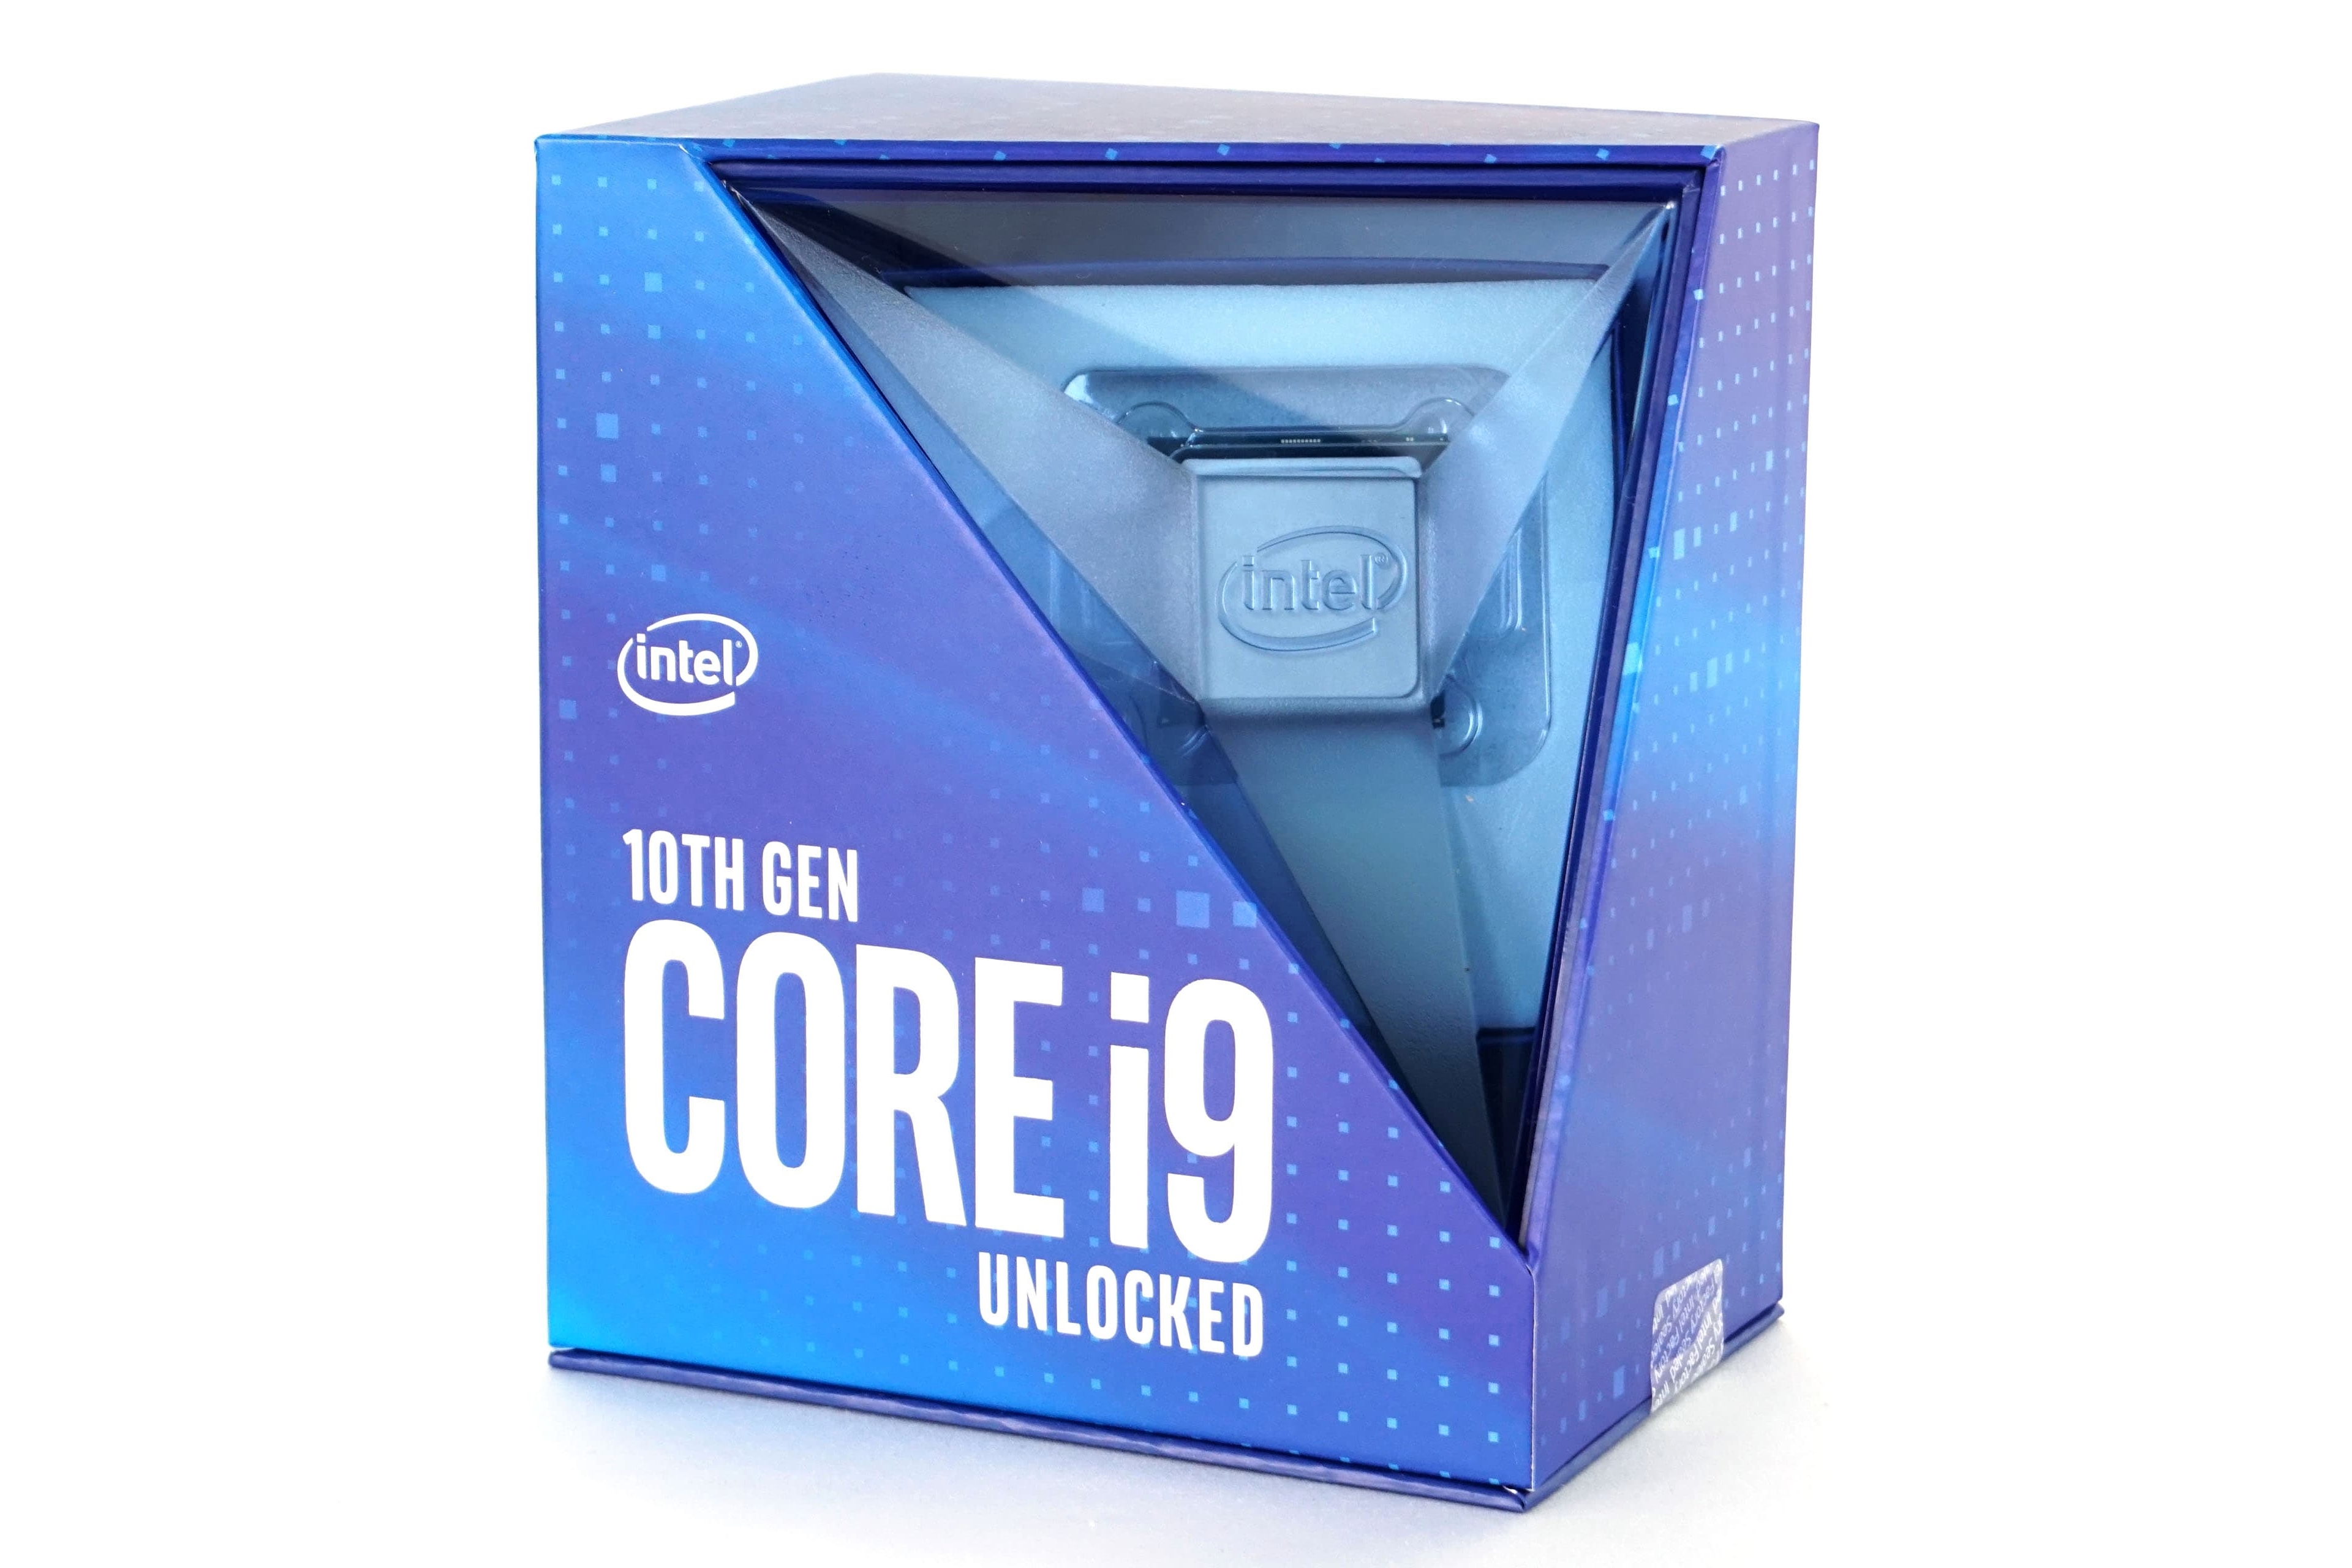 Aan het liegen Vuiligheid Ale Intel Core i9-10900K: The Last of the Mohicans - HWCooling.net